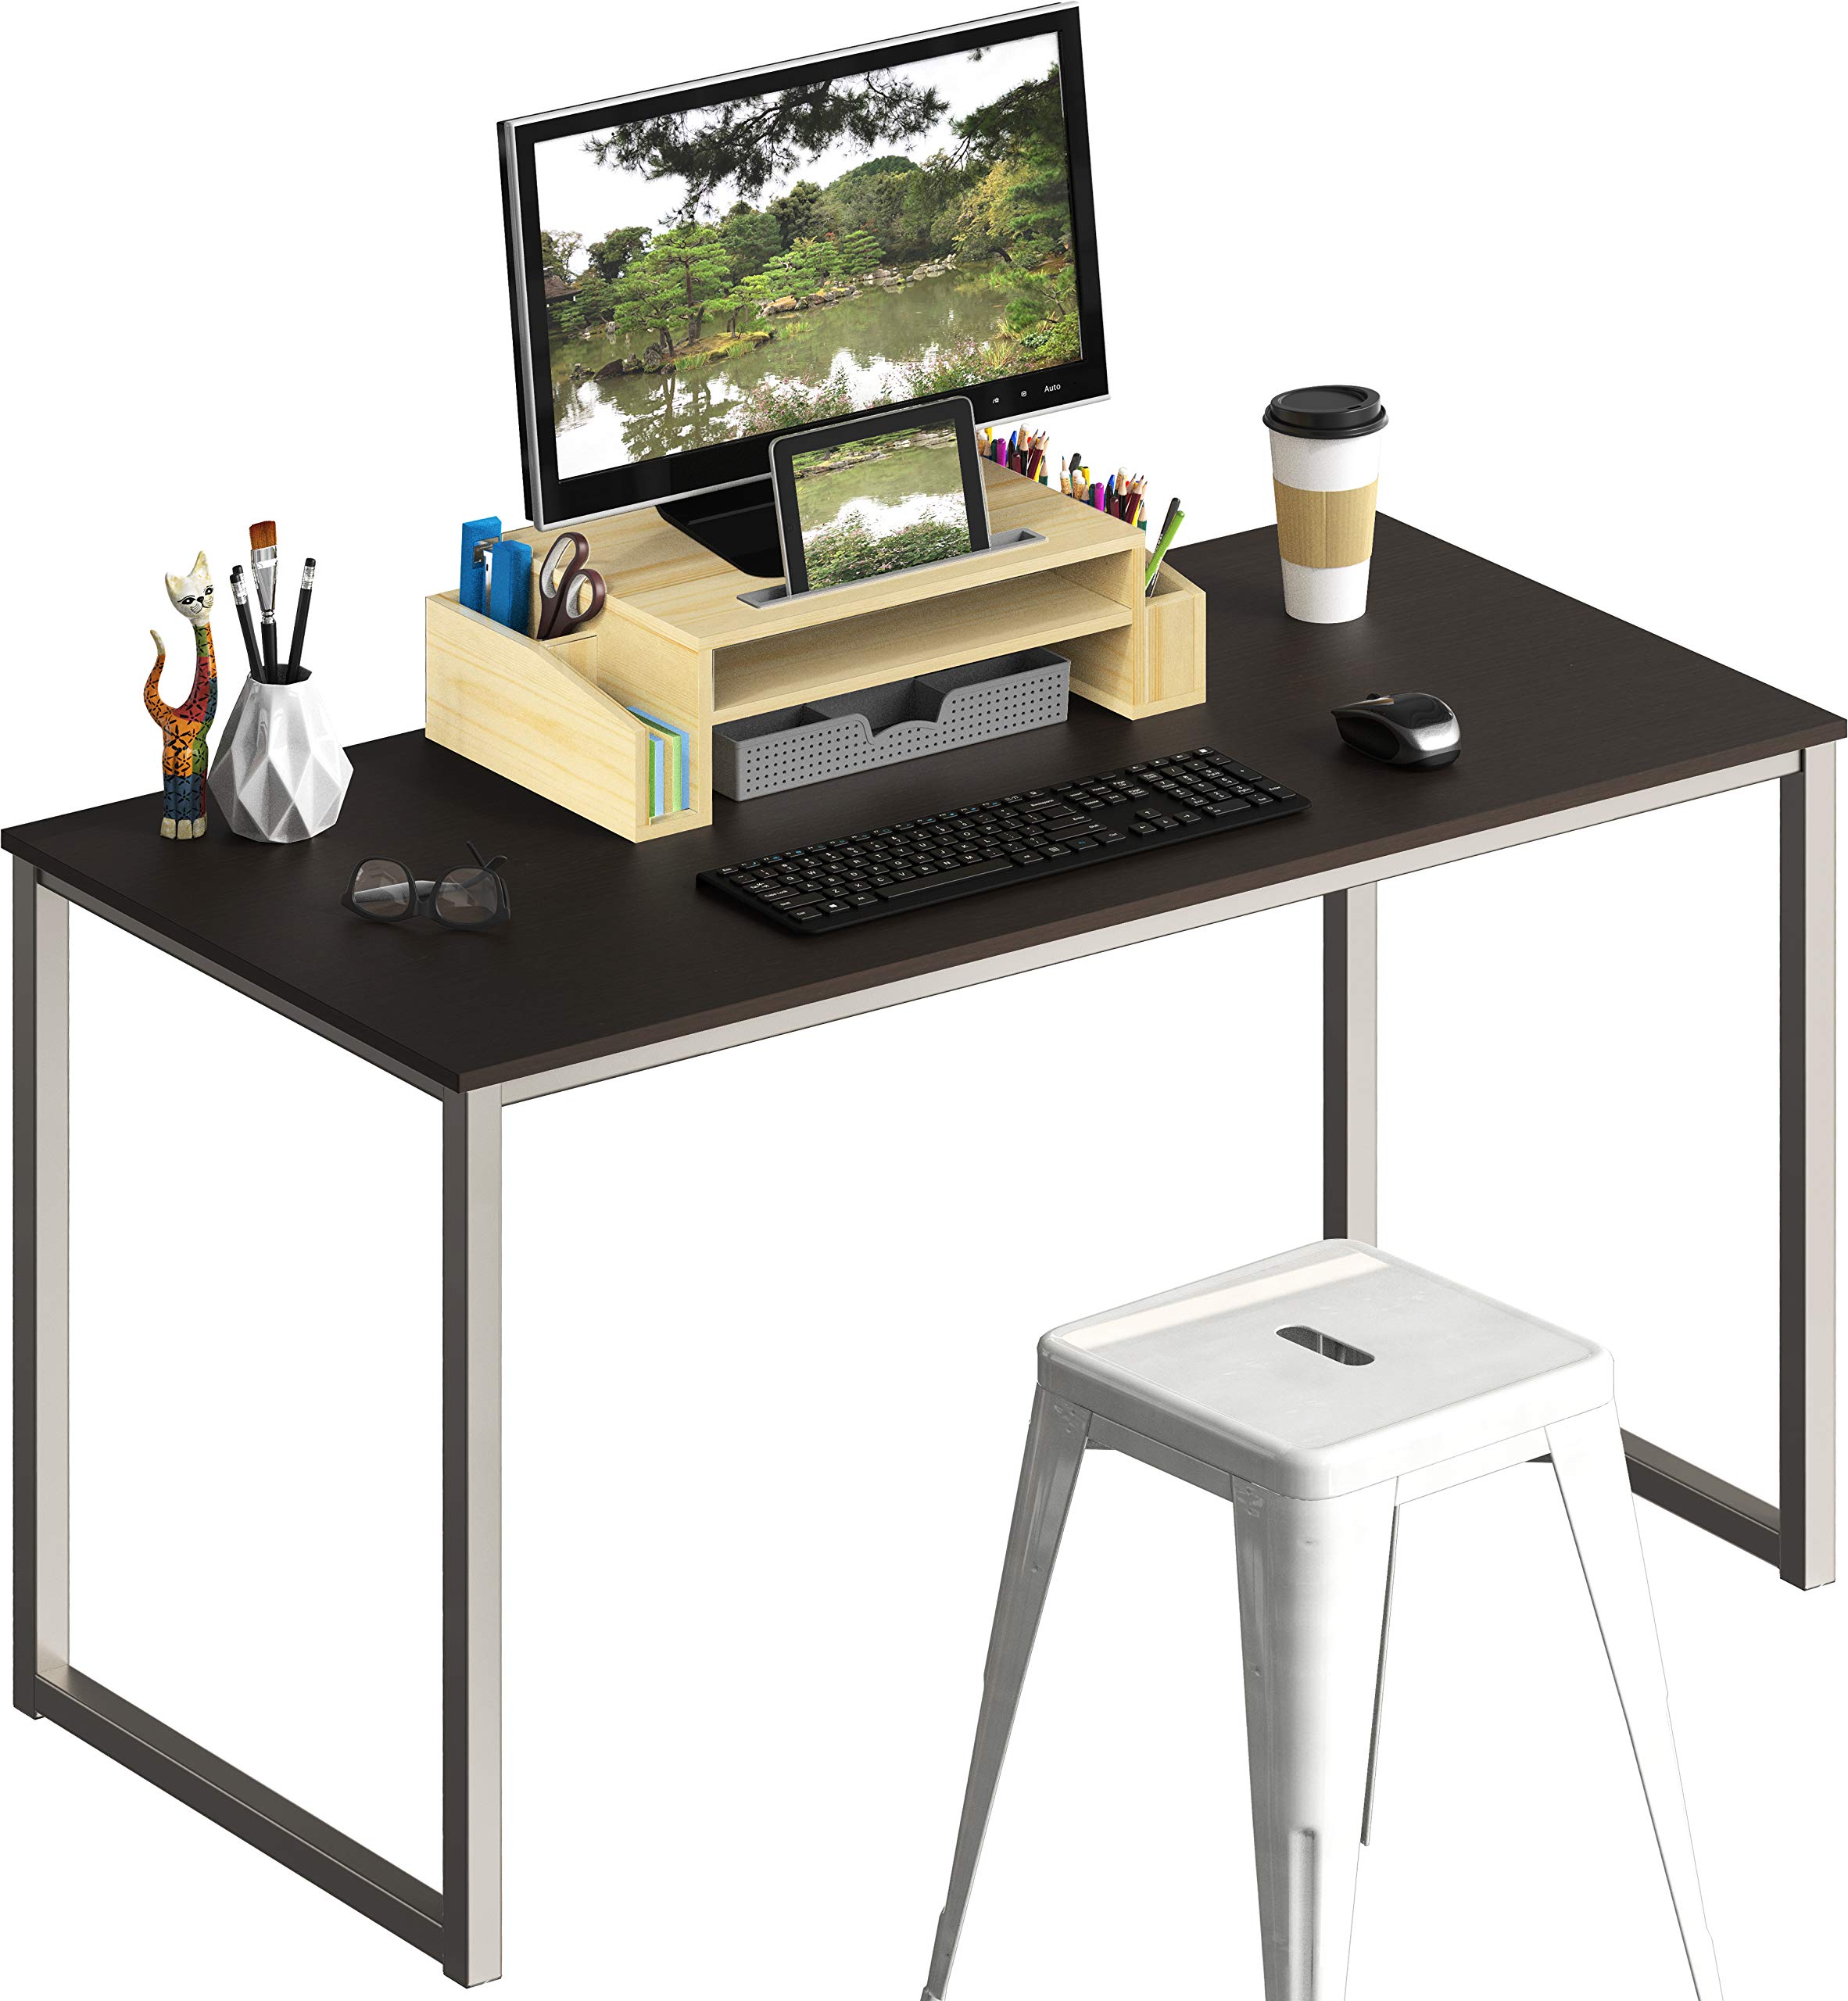 SHW Home Office 48-Inch Computer Desk, Silver/Espresso